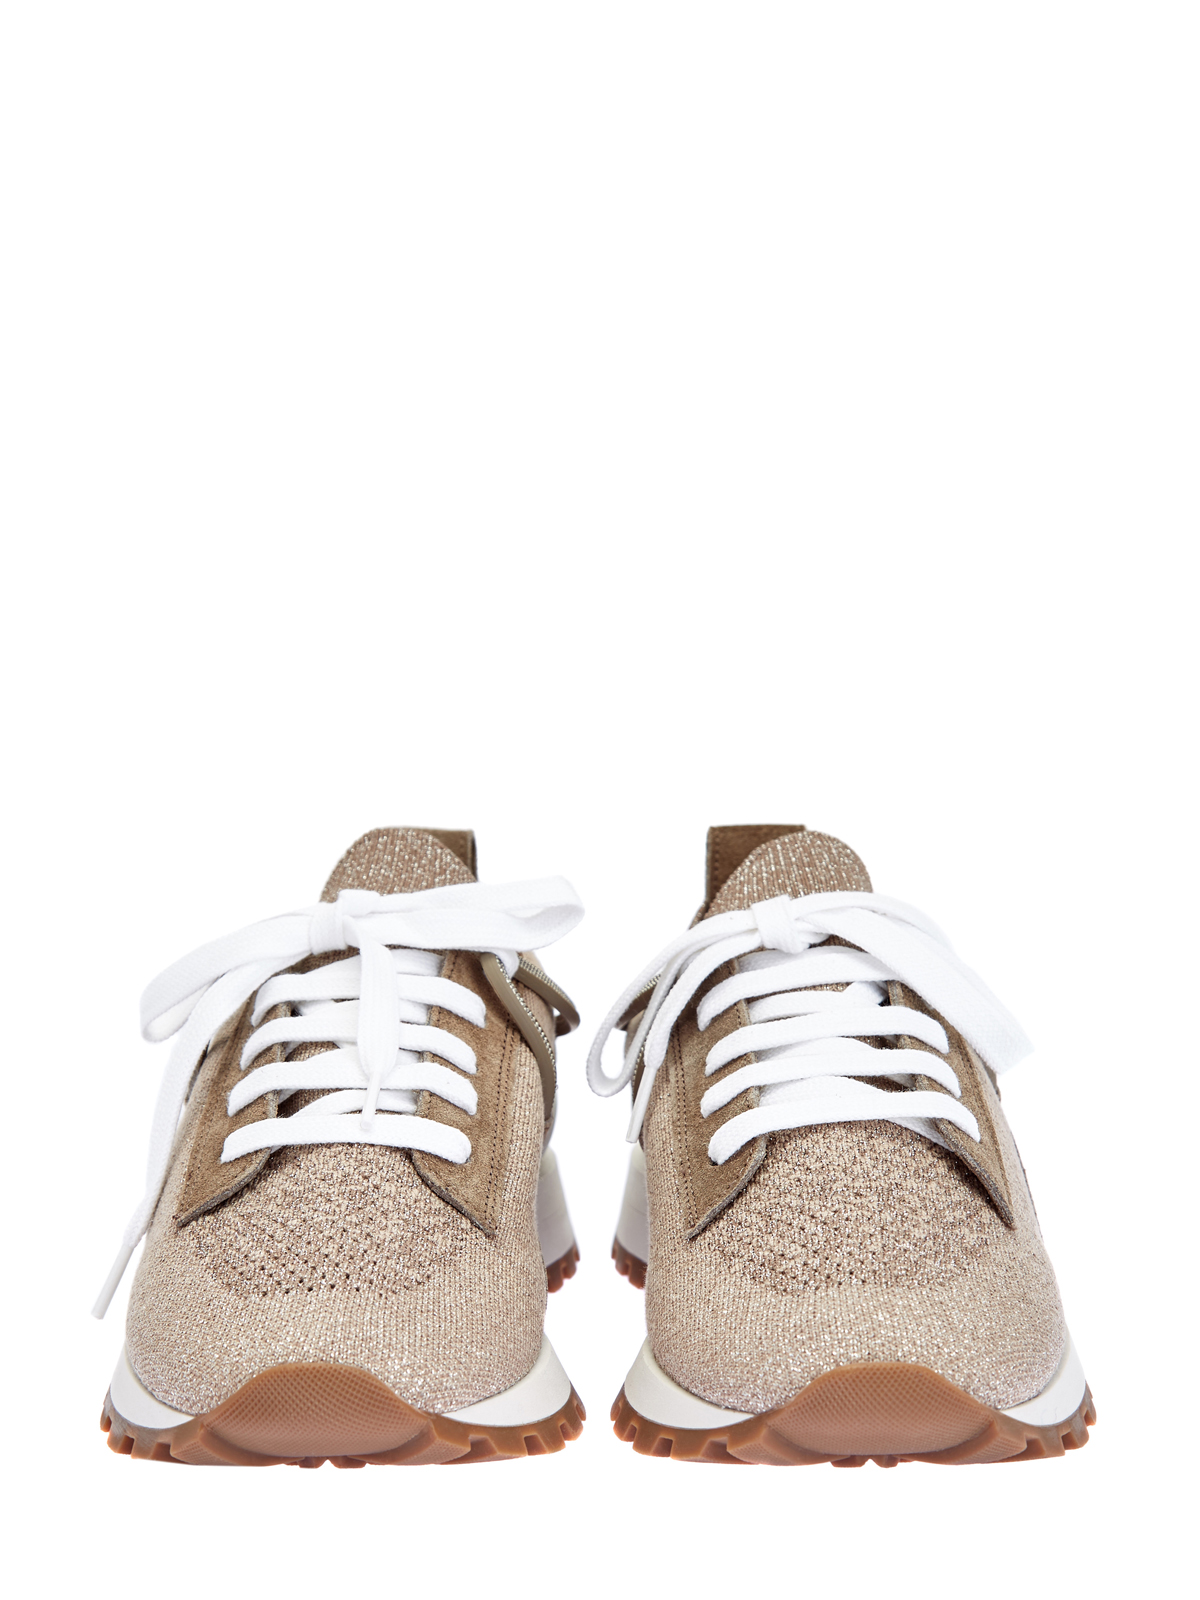 Кроссовки из мерцающего трикотажа Sparkling и мягкой замши BRUNELLO CUCINELLI, цвет коричневый, размер 37.5;39;41;39.5 - фото 6